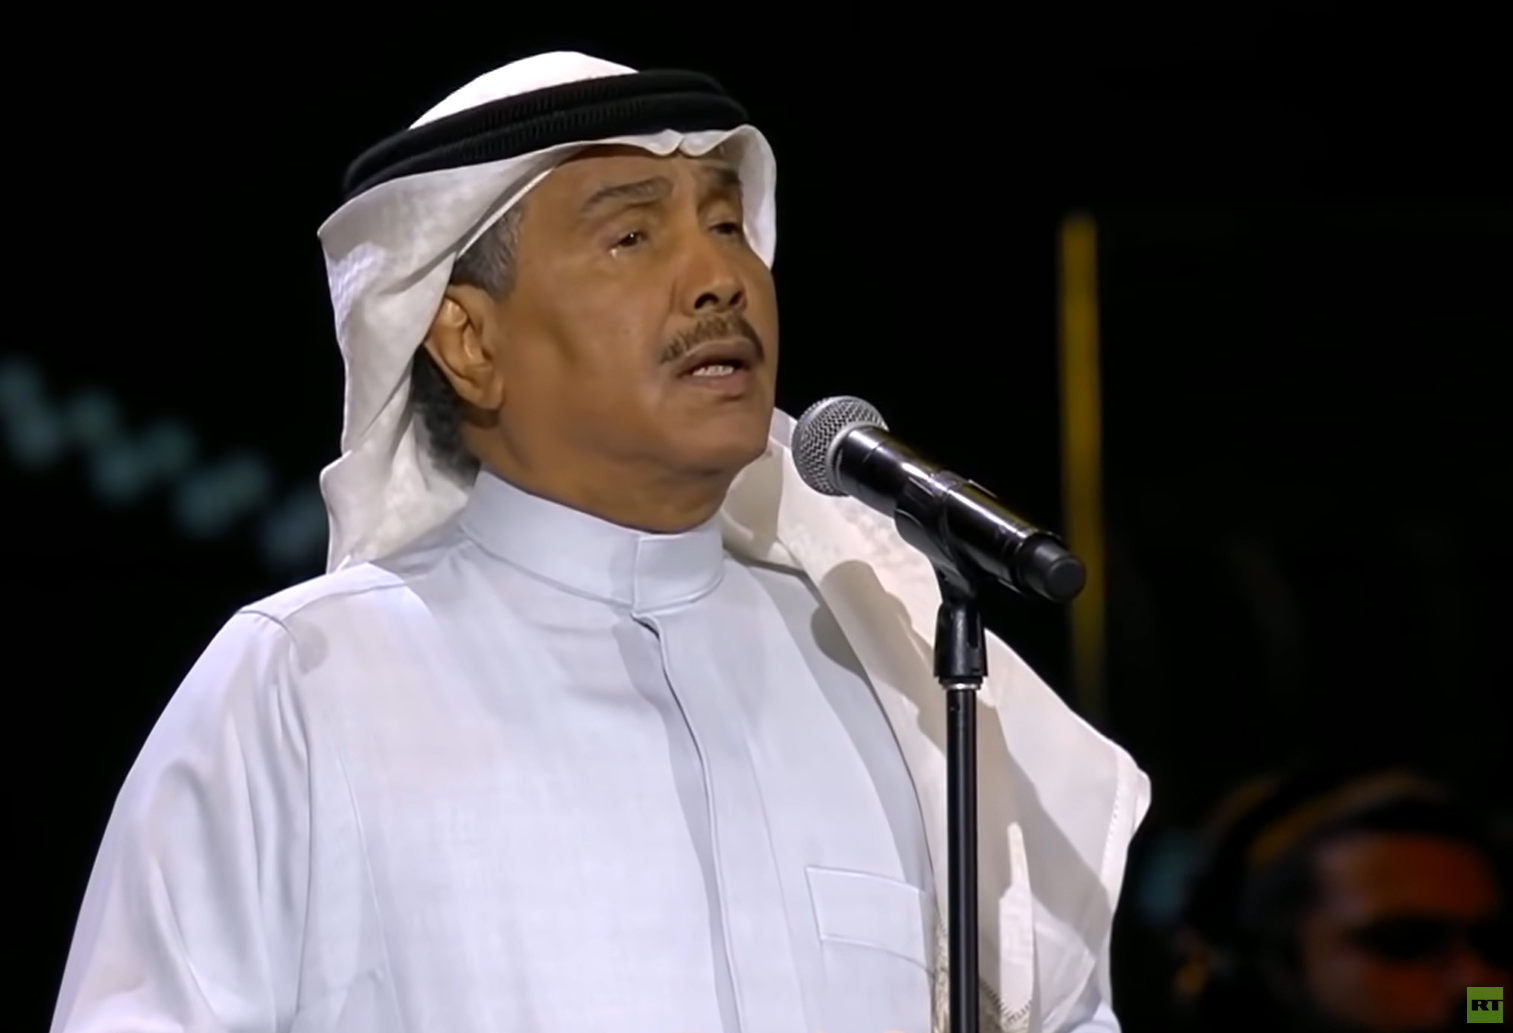 الفنان محمد عبده مدين بالاعتذار من أمير سعودي (فيديو)